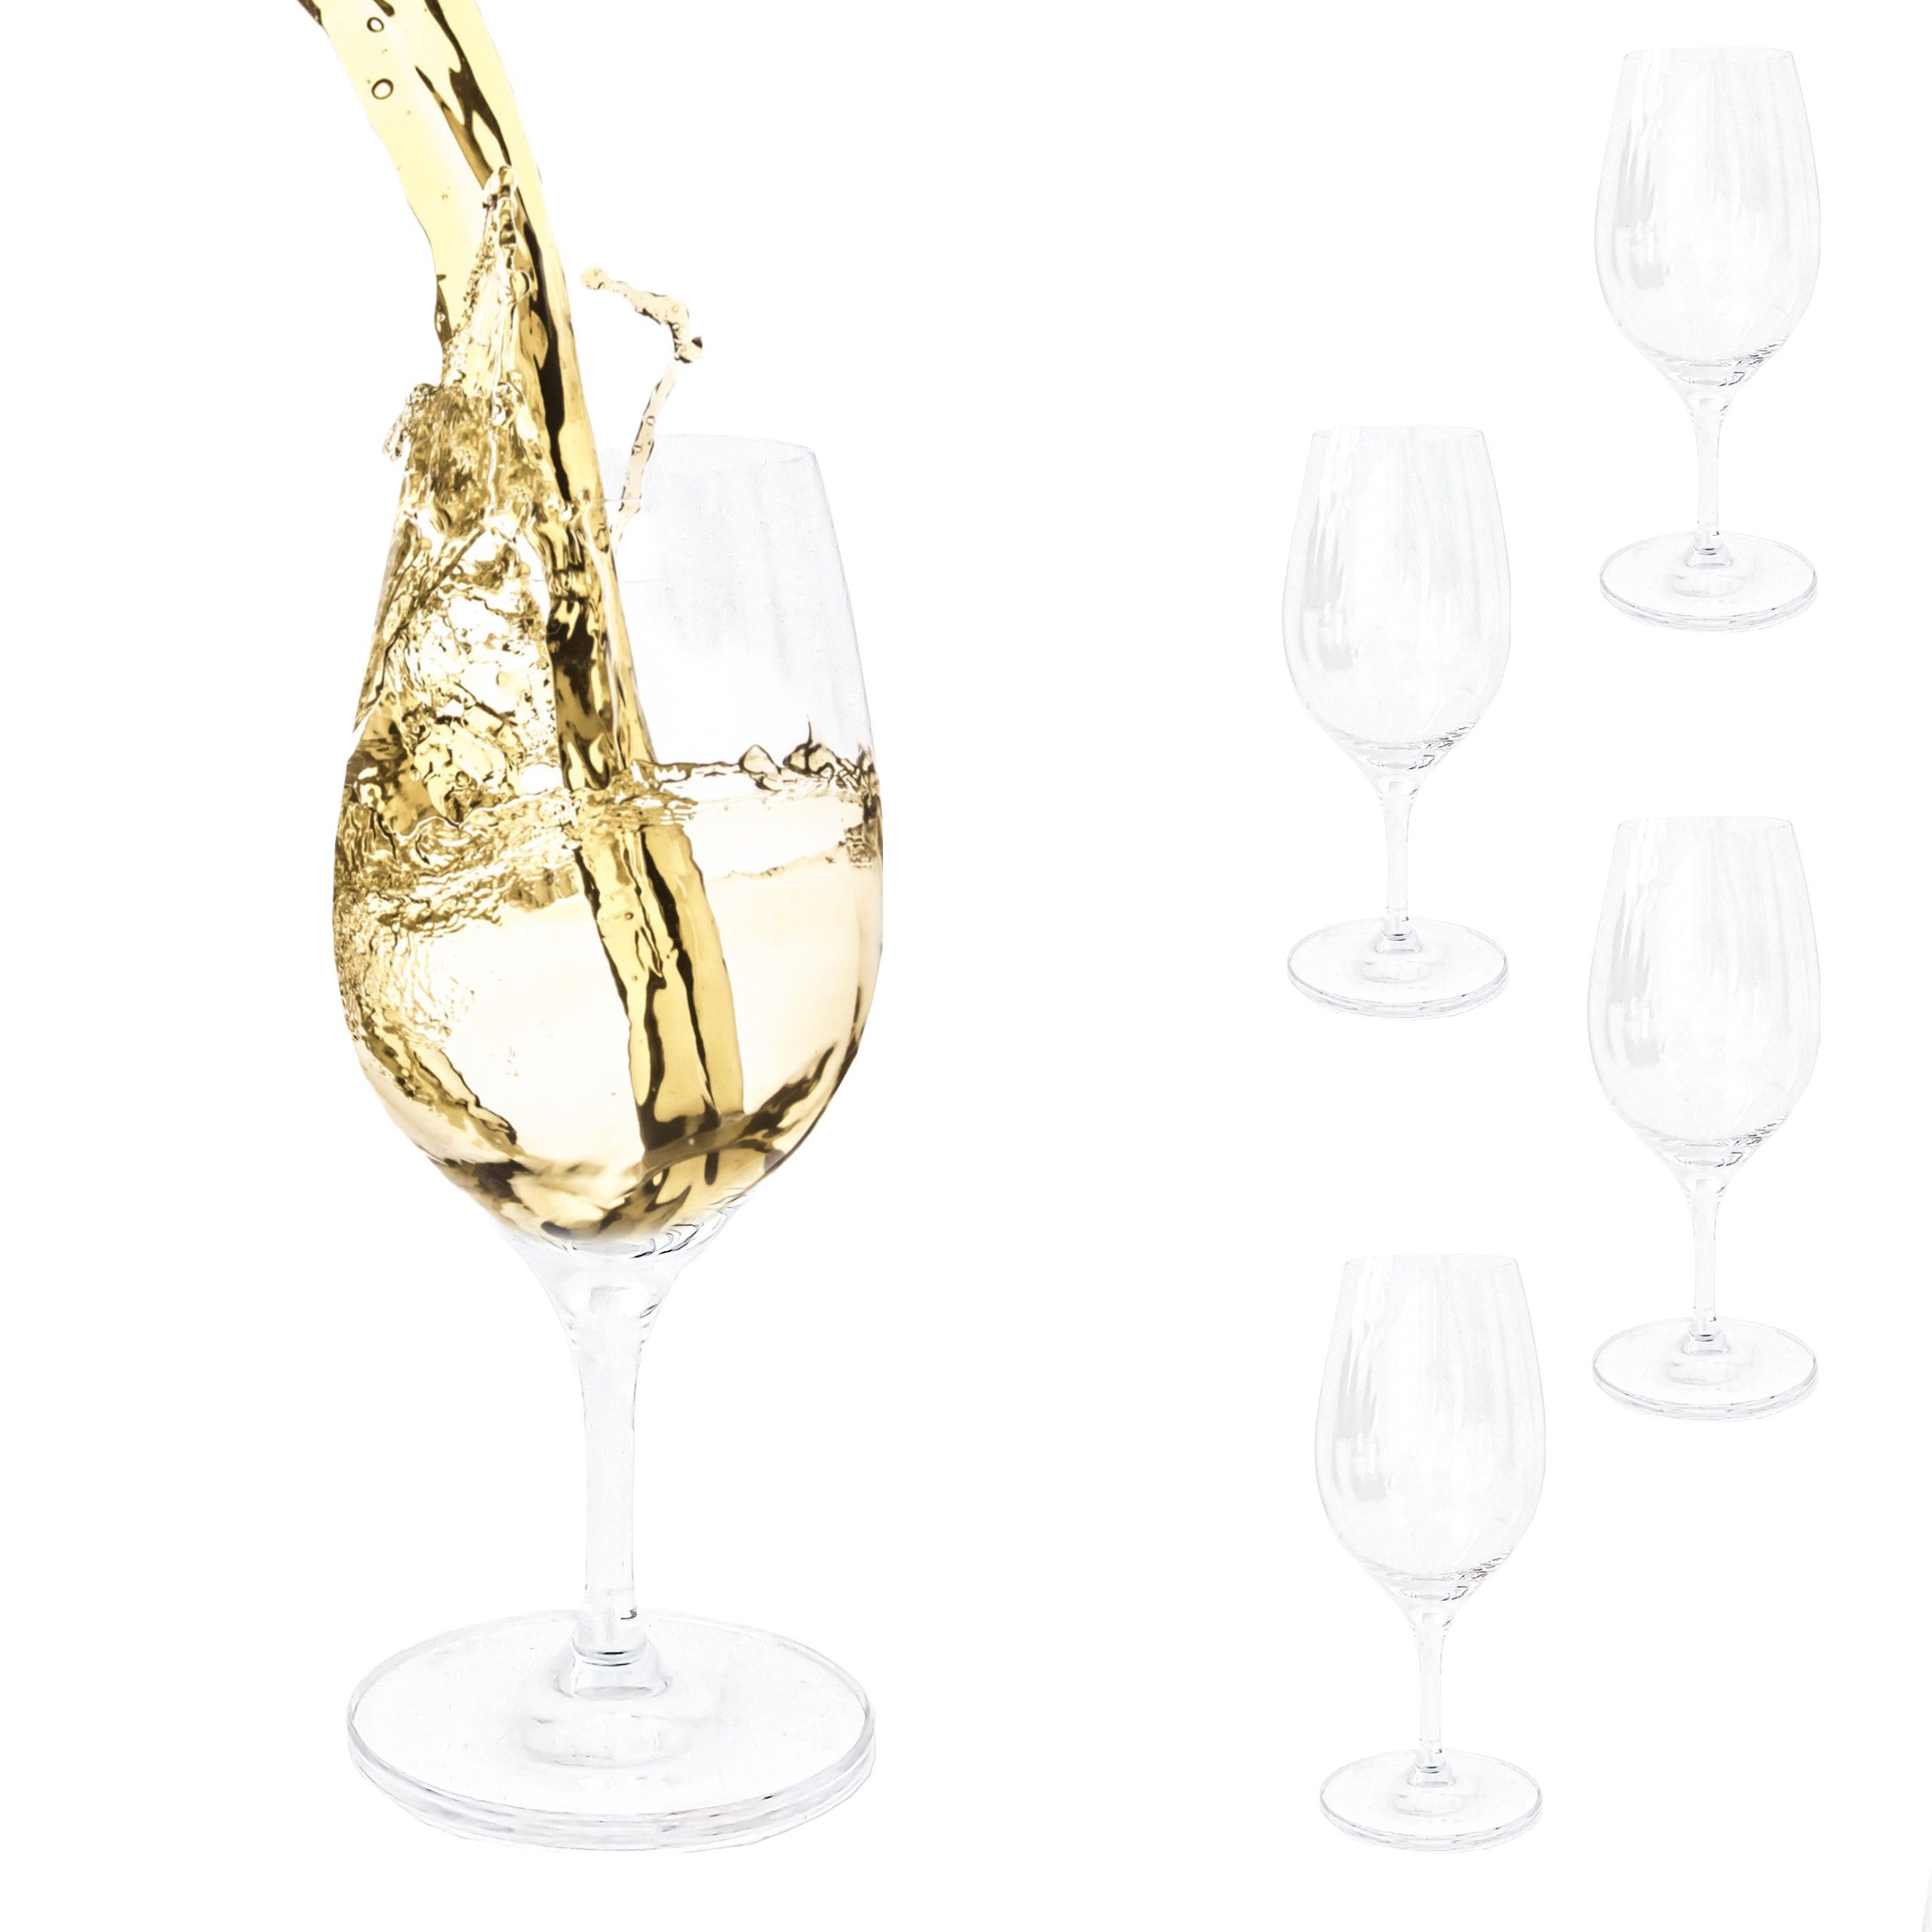 PassionMade Weißweinglas Бокалы для белого вина Spiegelau 4er Set Glas Weißwein 1078, Kristallglas, Spiegelau Weißwein Gläser 4er Set